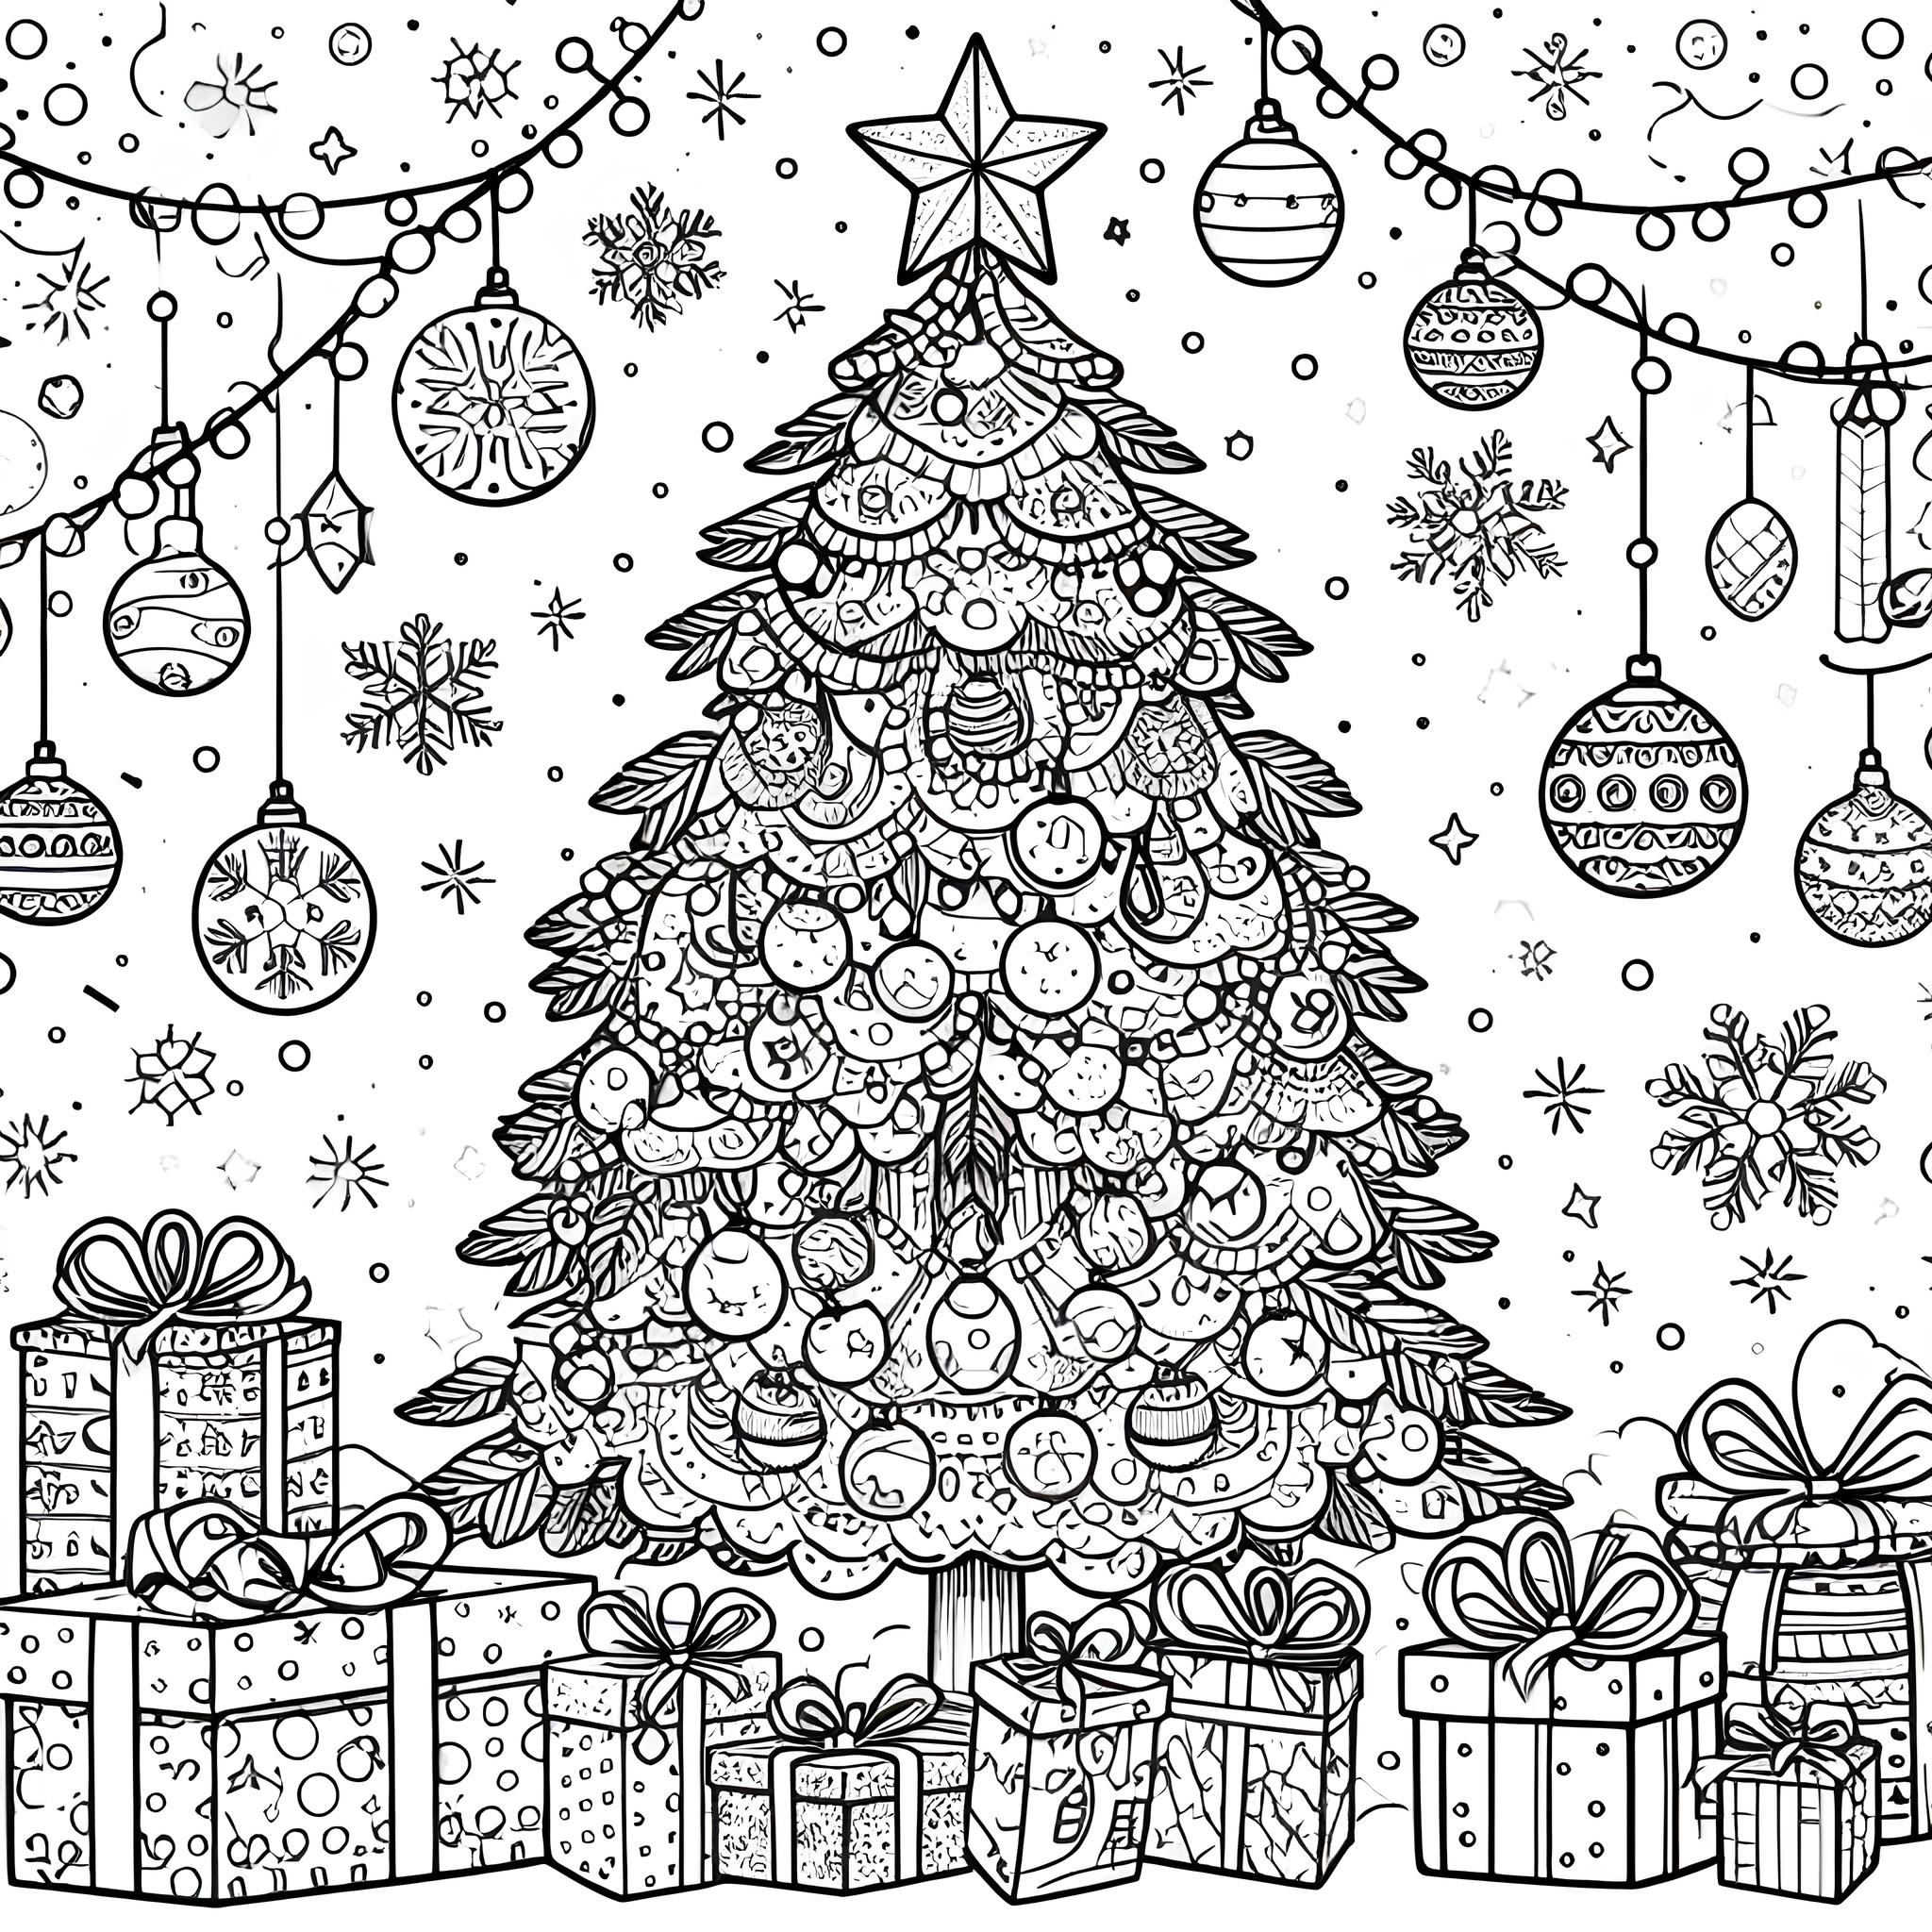 Ausmalbild: Weihnachtsbaum mit Geschenken 2